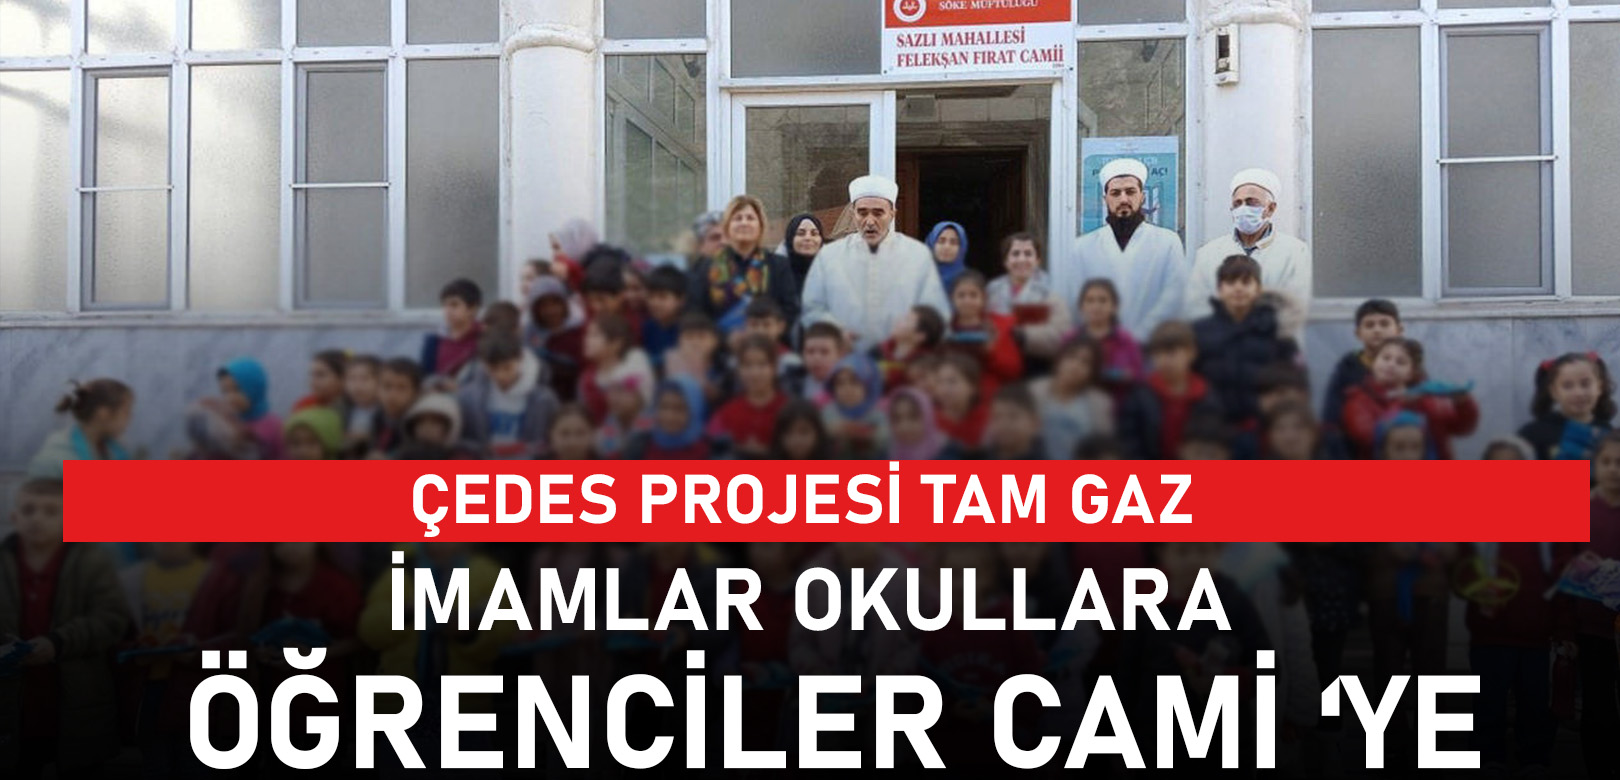 ÇEDES projesi tam gaz: İmamlar okullara, öğrenciler camiye